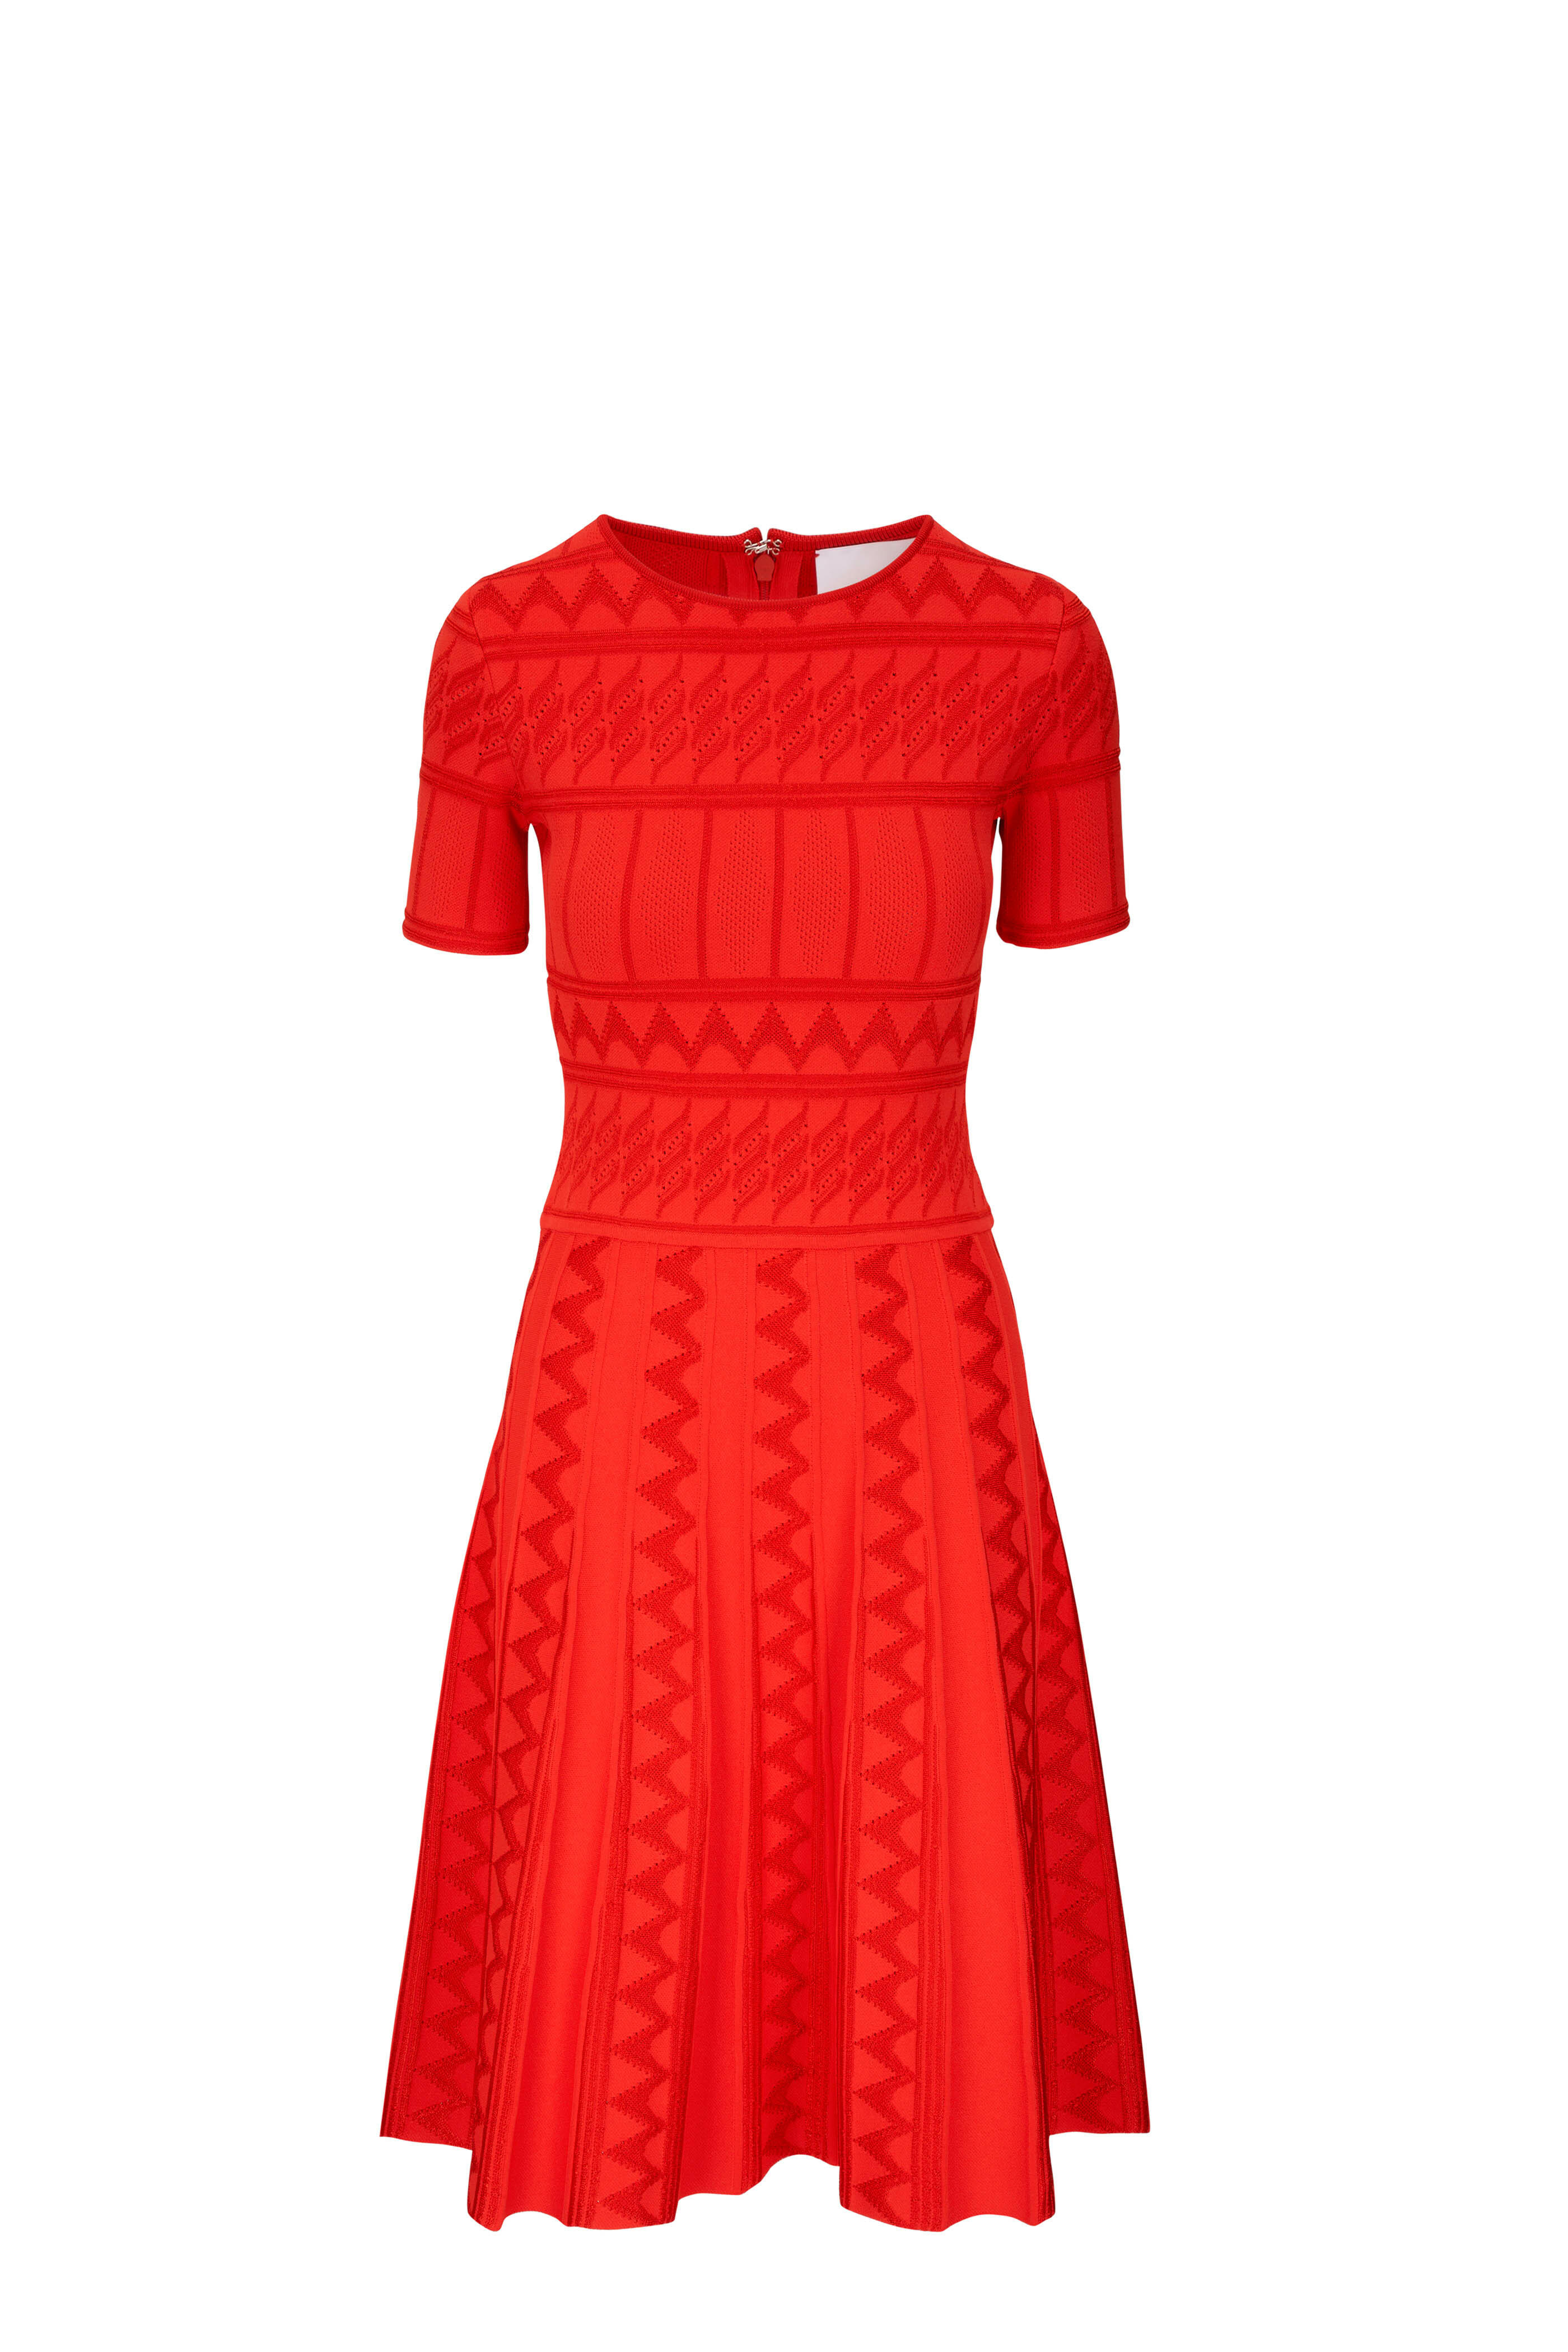 Carolina Herrera - Paprika Textured Knit Pleated Midi Dress